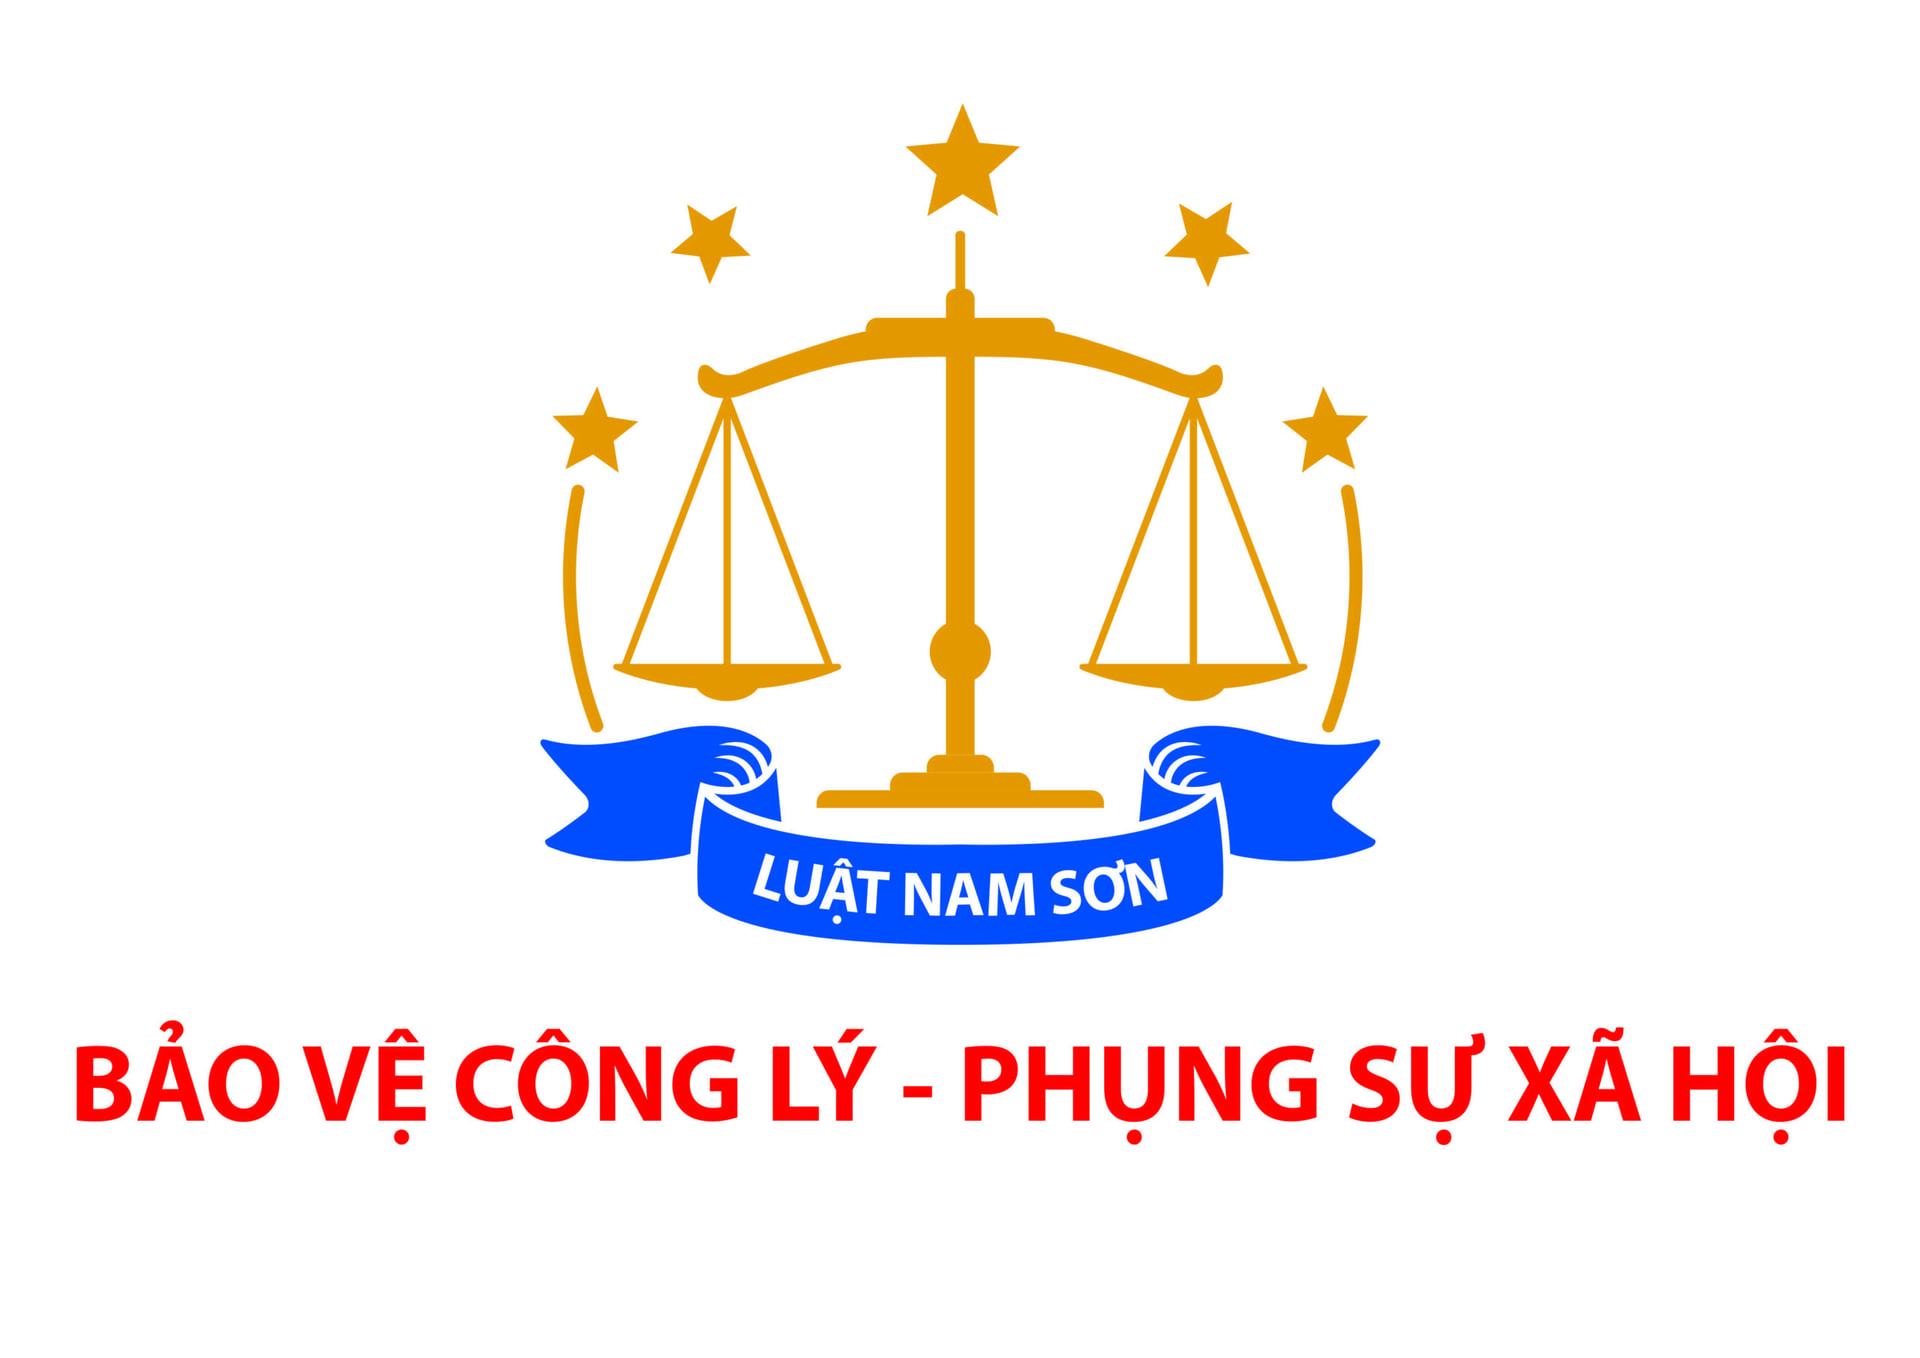 Luật Nam Sơn